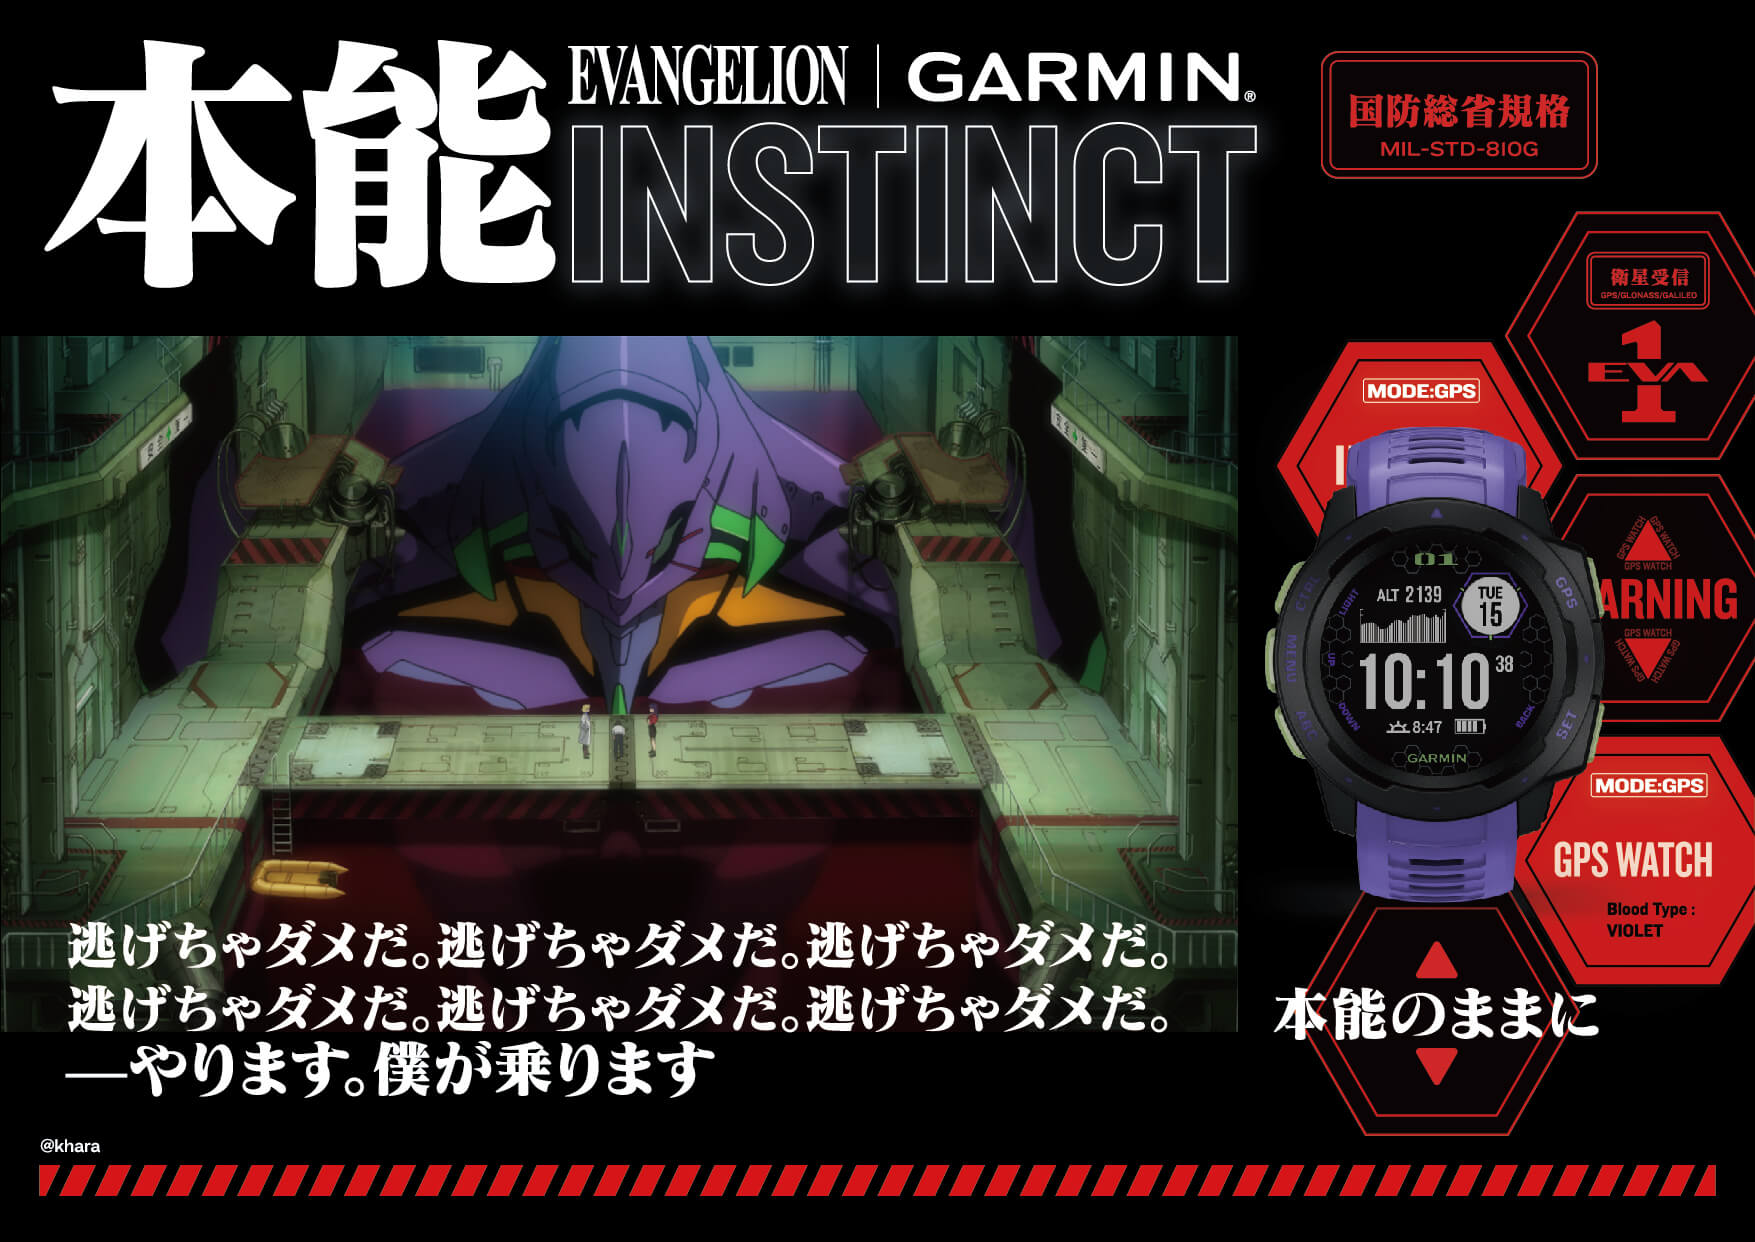 Instinct Evangelion | スマートウォッチ | Garmin 日本